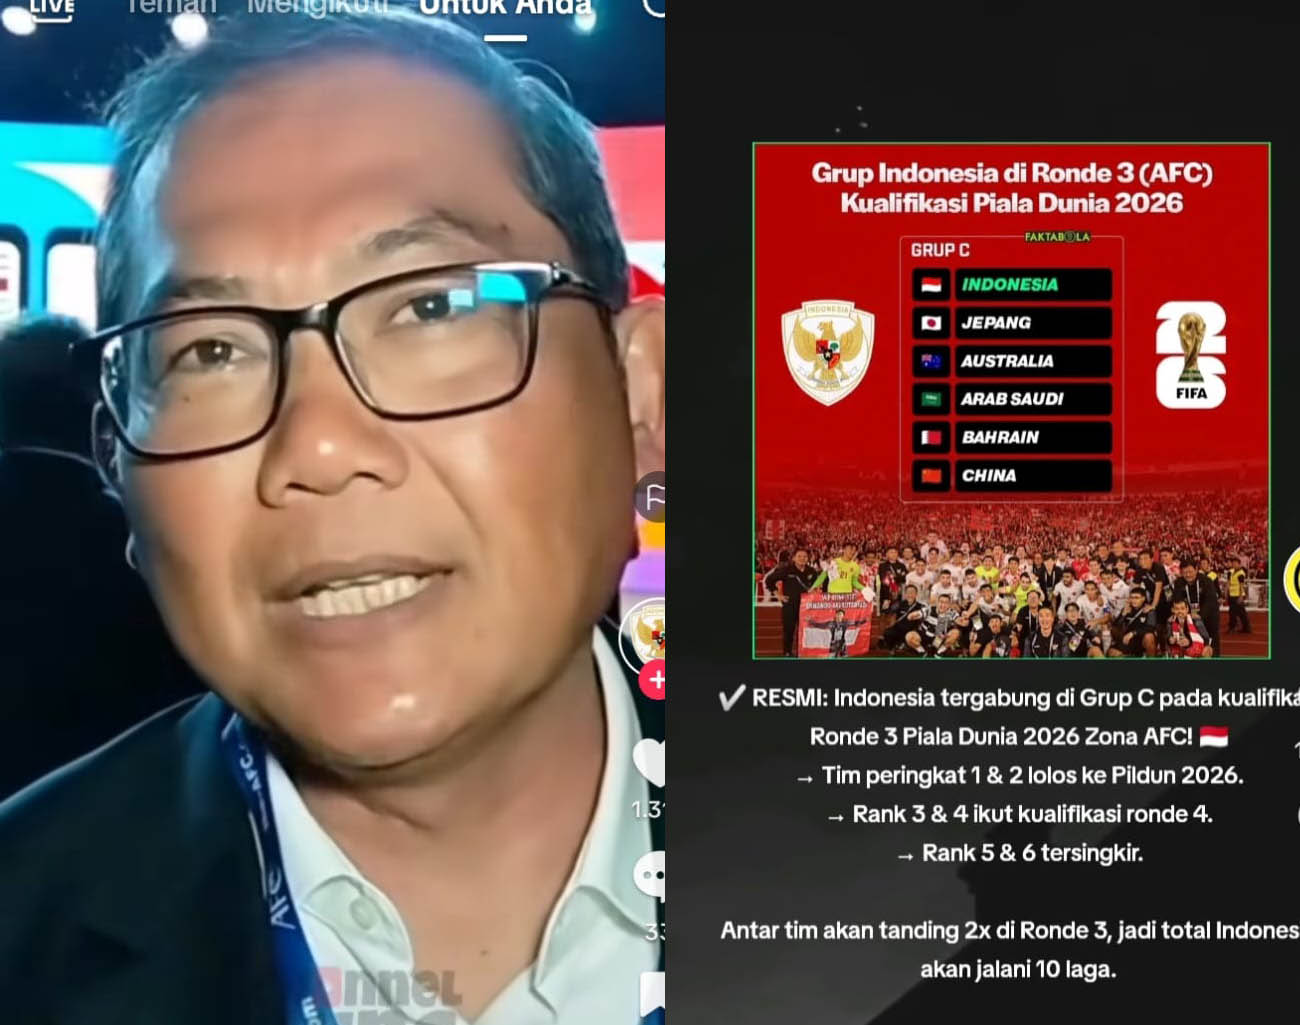 Indonesia Tambah Pemain Keturunan, Manager Timnas Sumardji, Hasil Drawing Ronde 3 Kualifikasi Piala Dunia 2026